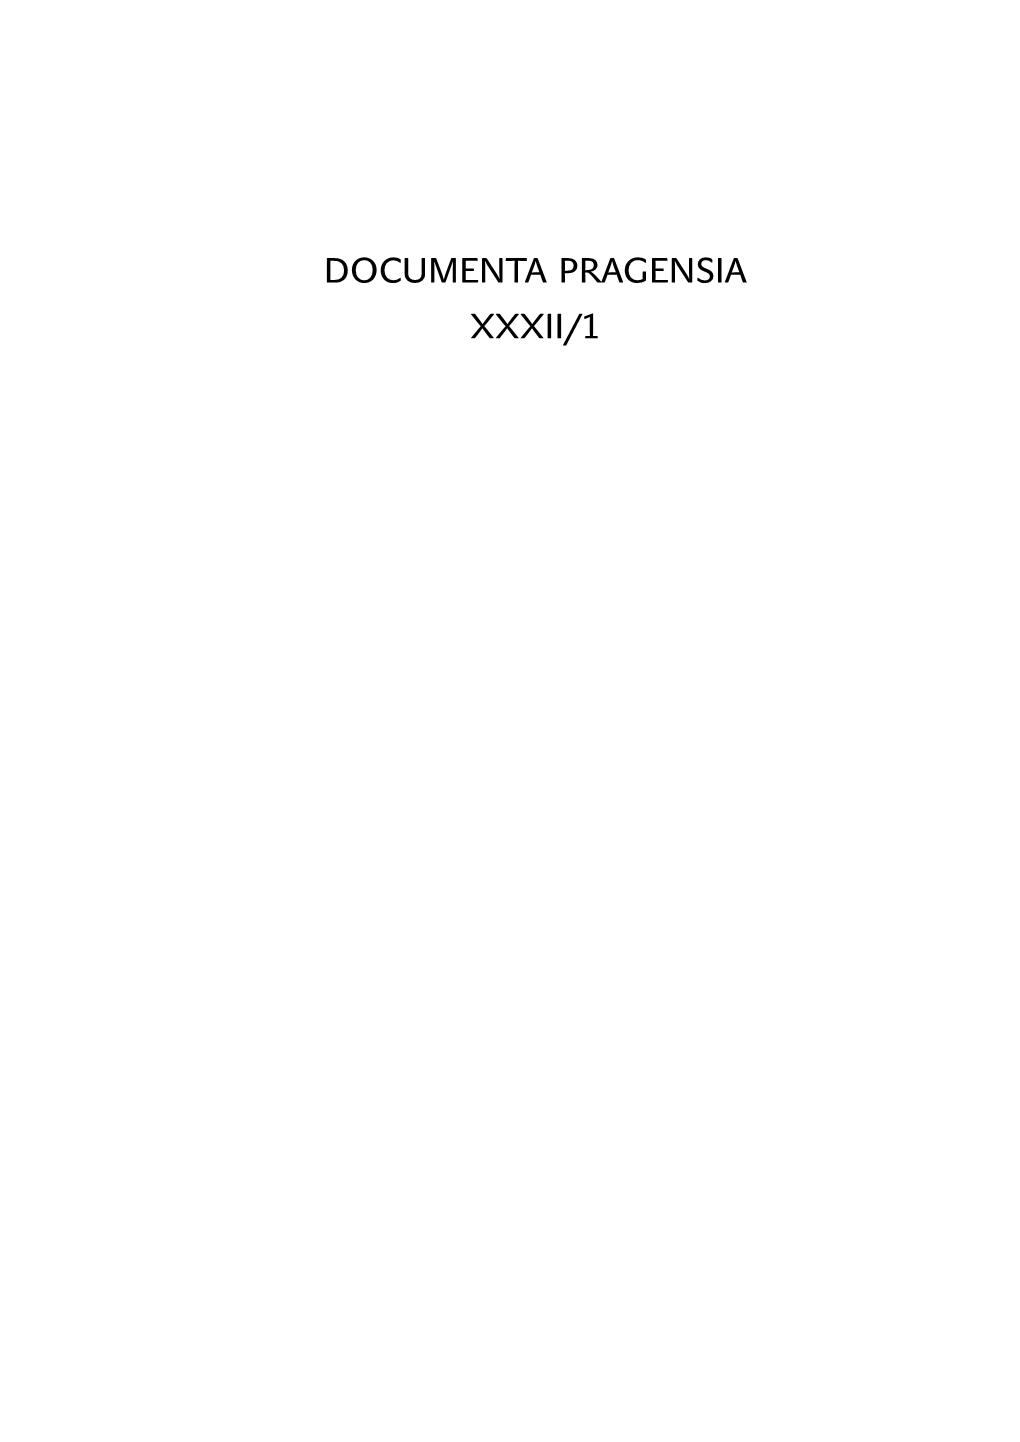 Documenta Pragensia Xxxii/1 Documenta Pragensia Xxxii/1